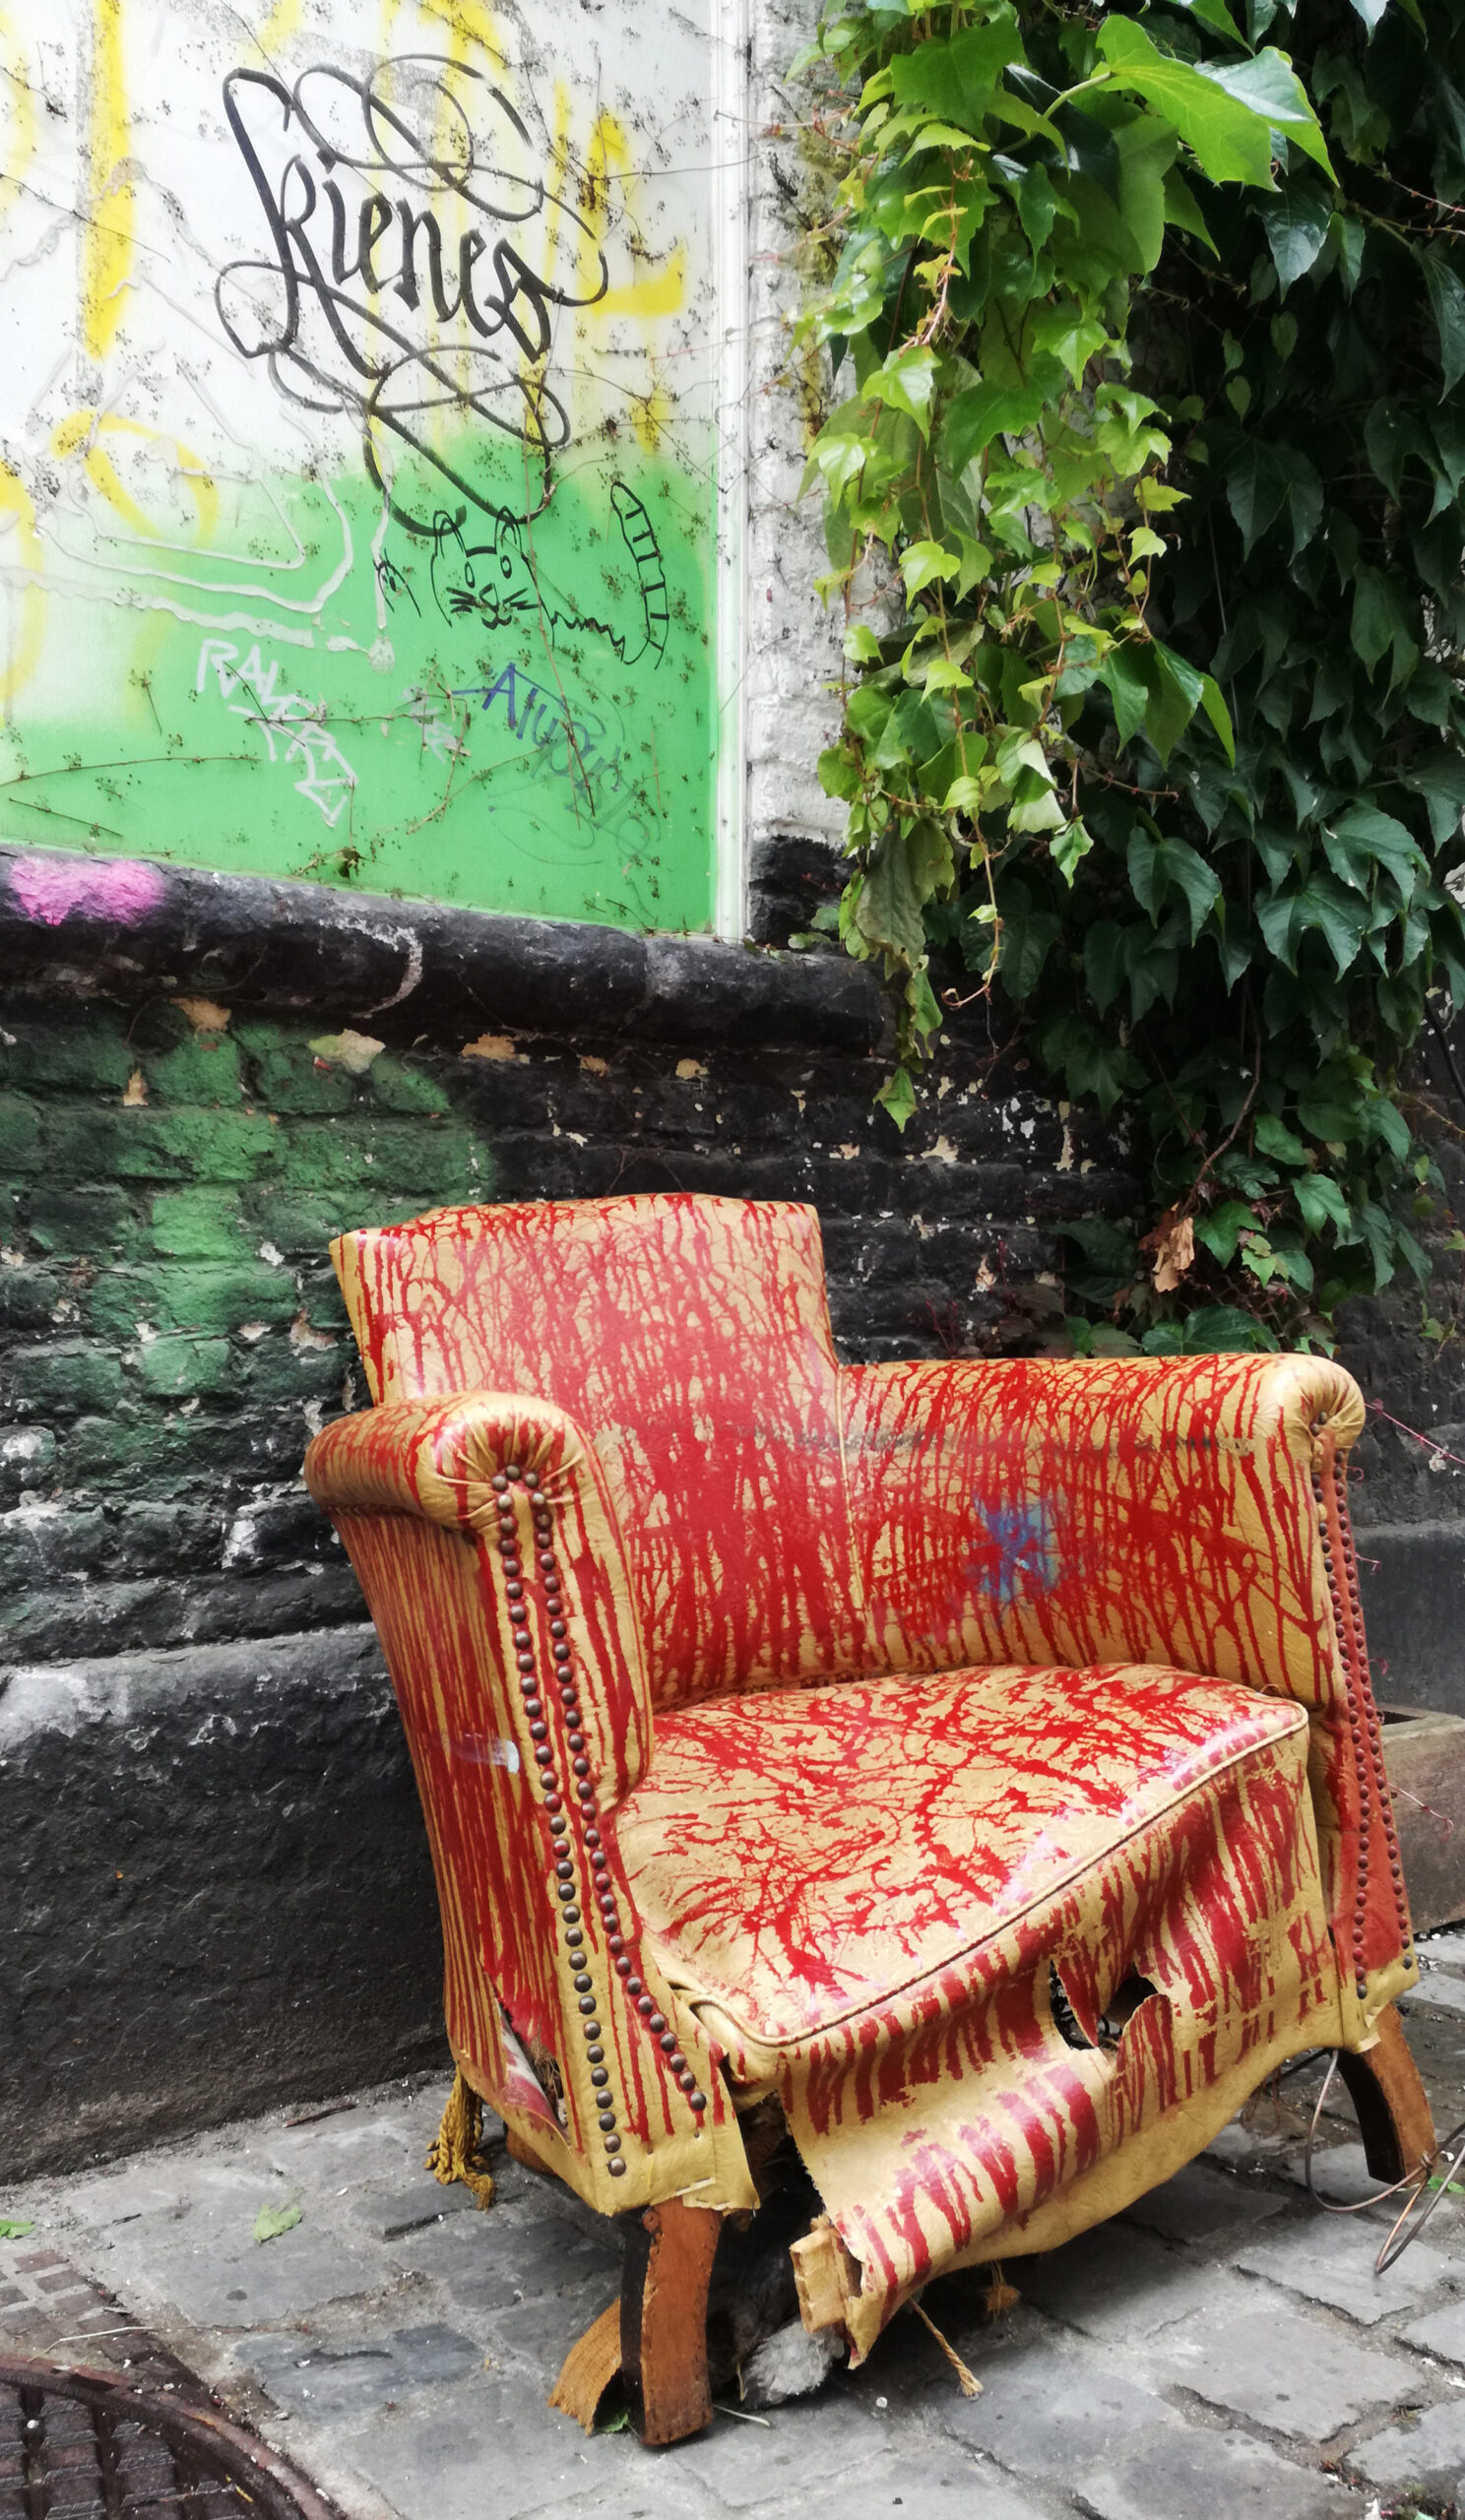 fauteuil abimé tranant dans une rue de Bruxelles, avec des grafitis.